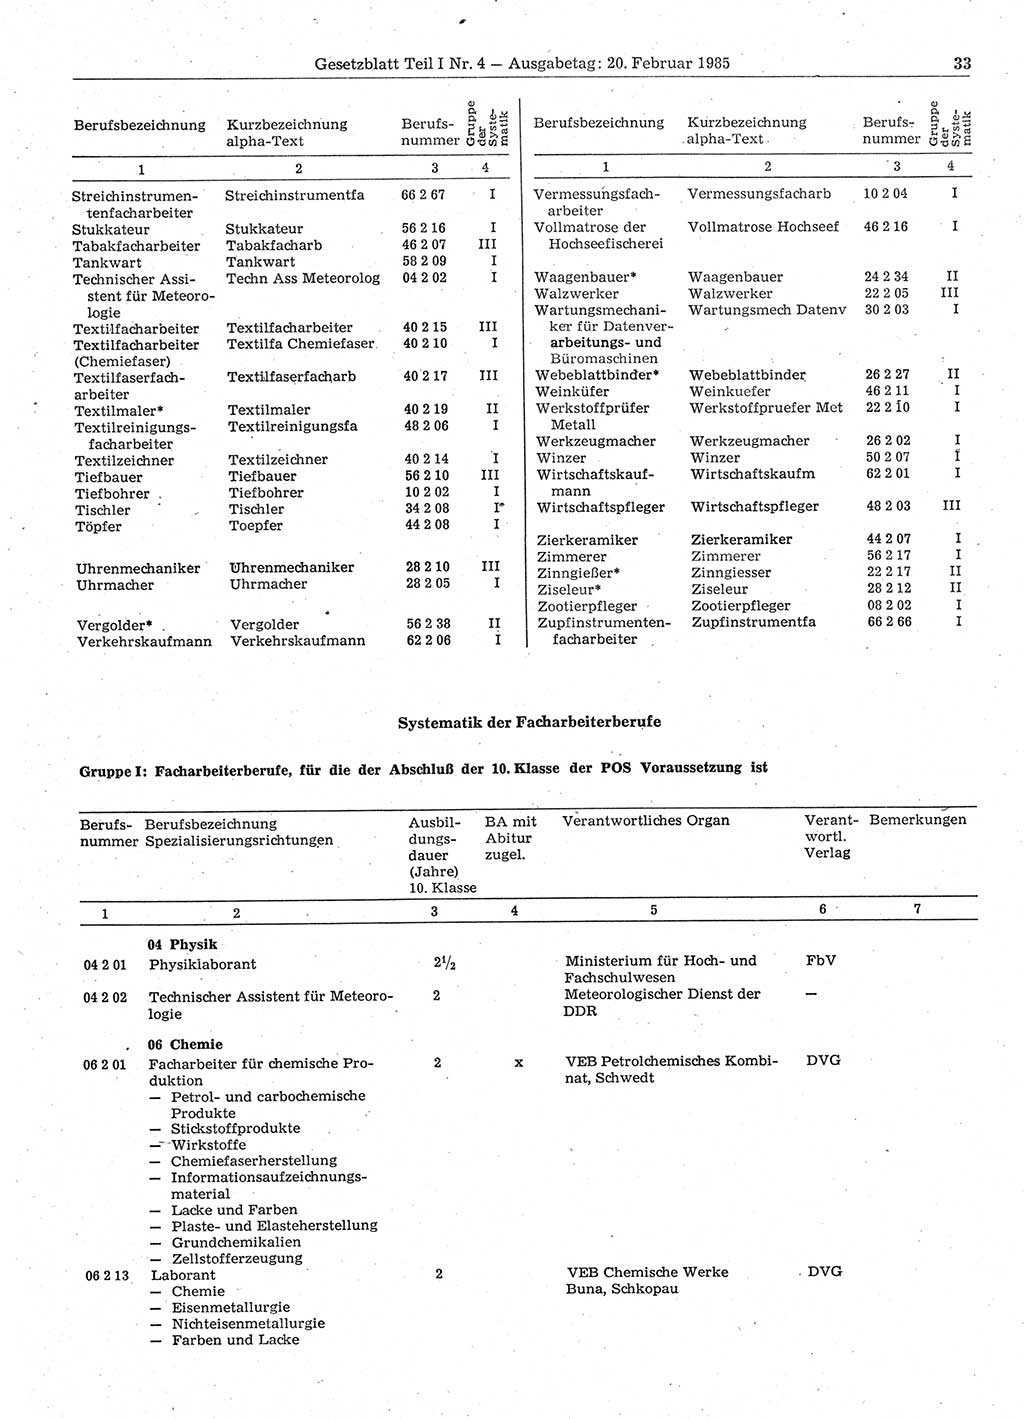 Gesetzblatt (GBl.) der Deutschen Demokratischen Republik (DDR) Teil Ⅰ 1985, Seite 33 (GBl. DDR Ⅰ 1985, S. 33)